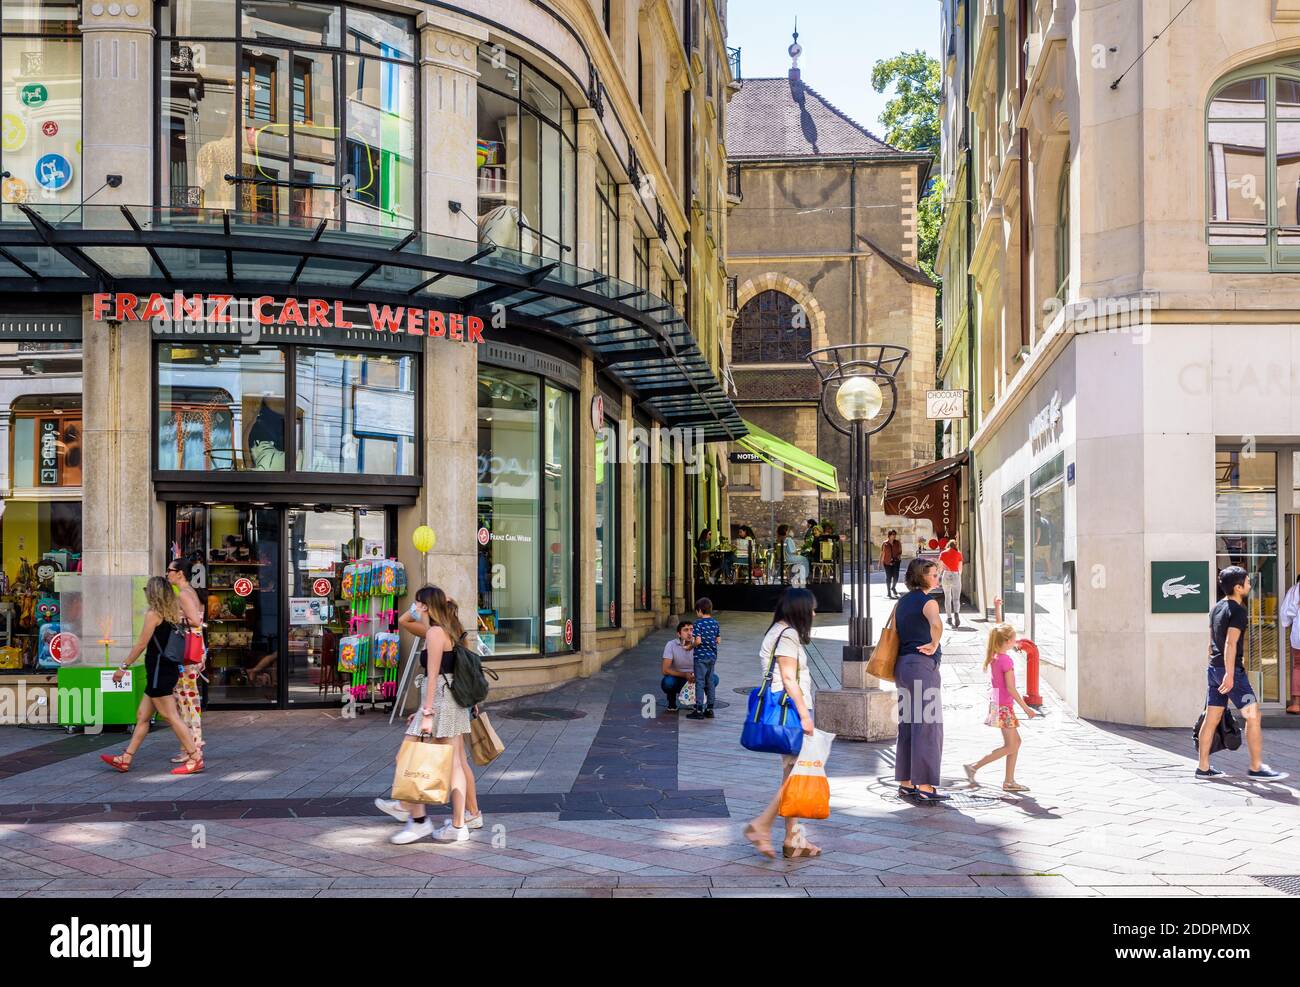 Les gens vont faire du shopping dans la rue commerçante principale de  Genève, en passant devant le magasin Franz Carl Weber, une célèbre chaîne  de magasins de jouets suisses Photo Stock -